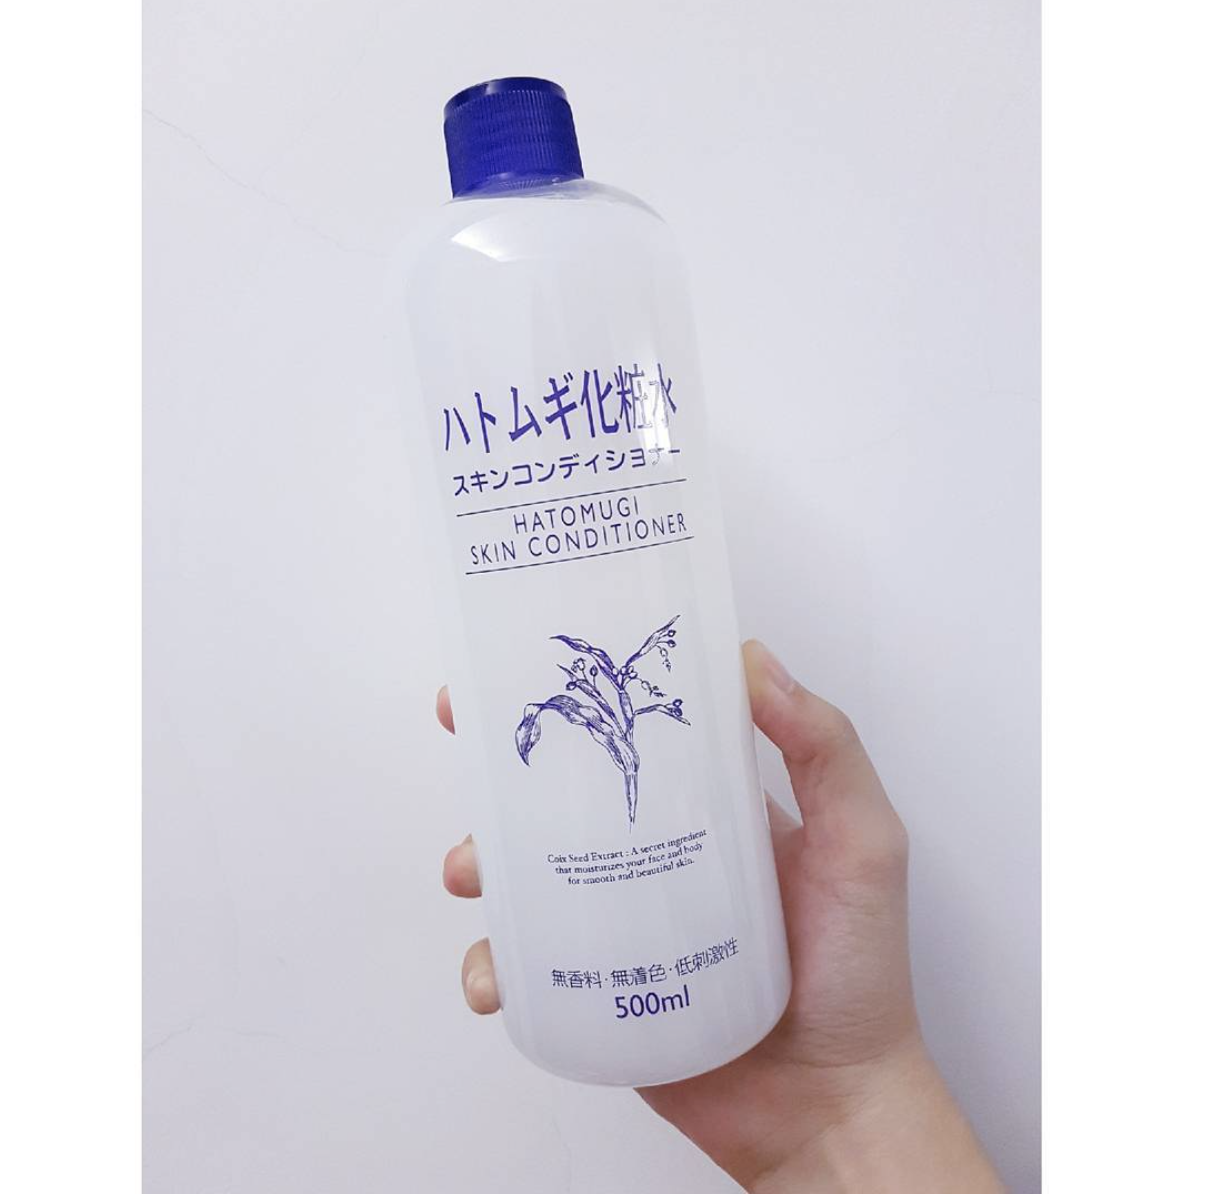 平價保濕產品 I-mju 薏仁化妝水。